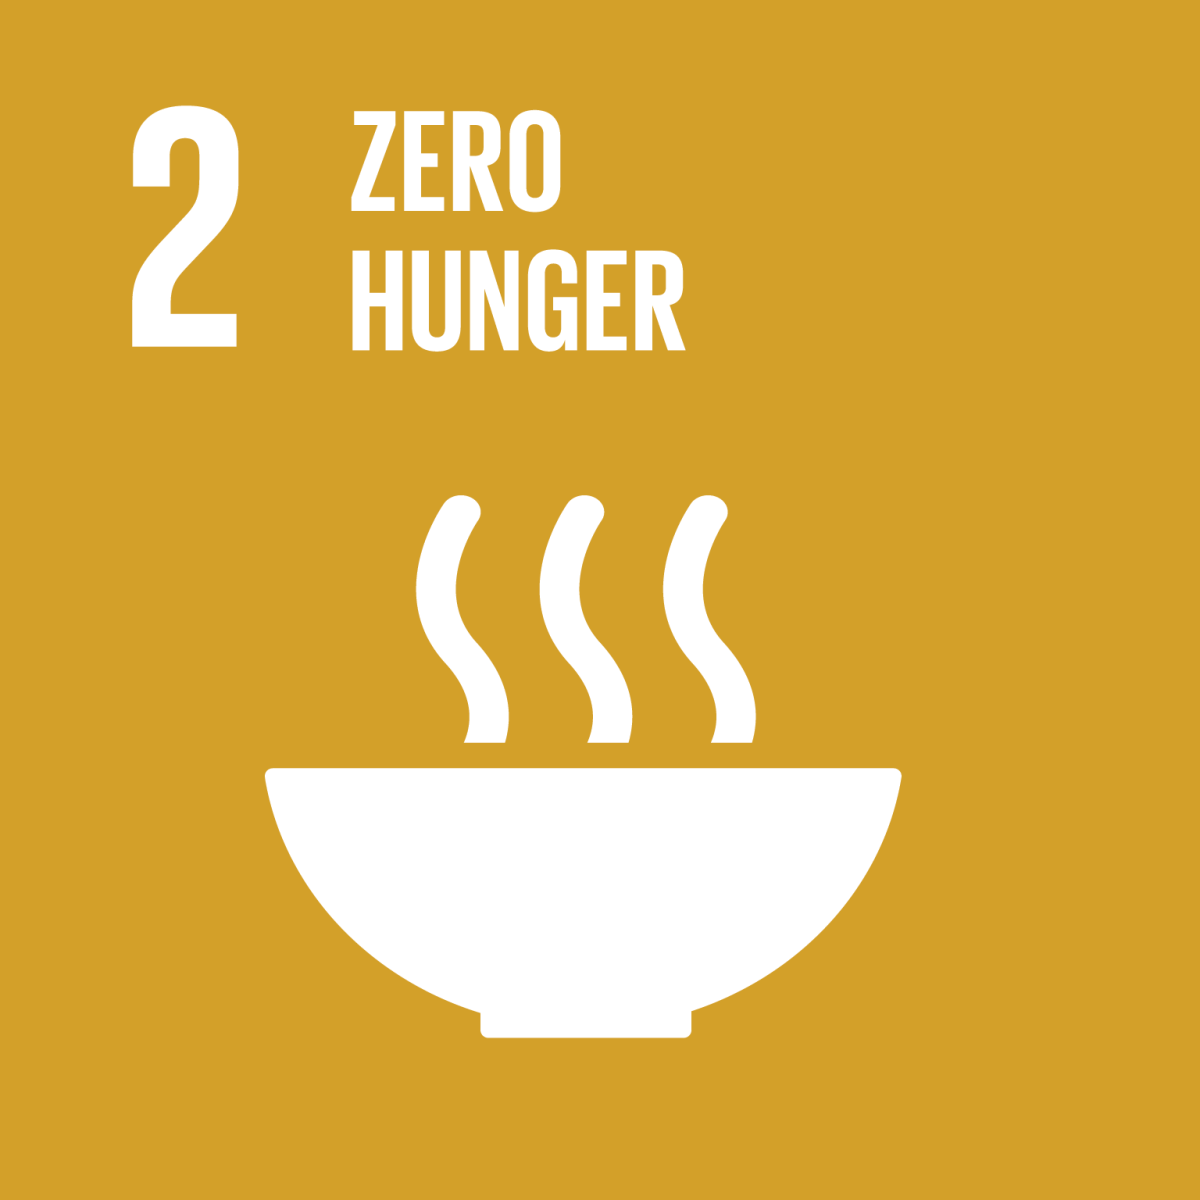 Goal 2 Zero Hunger